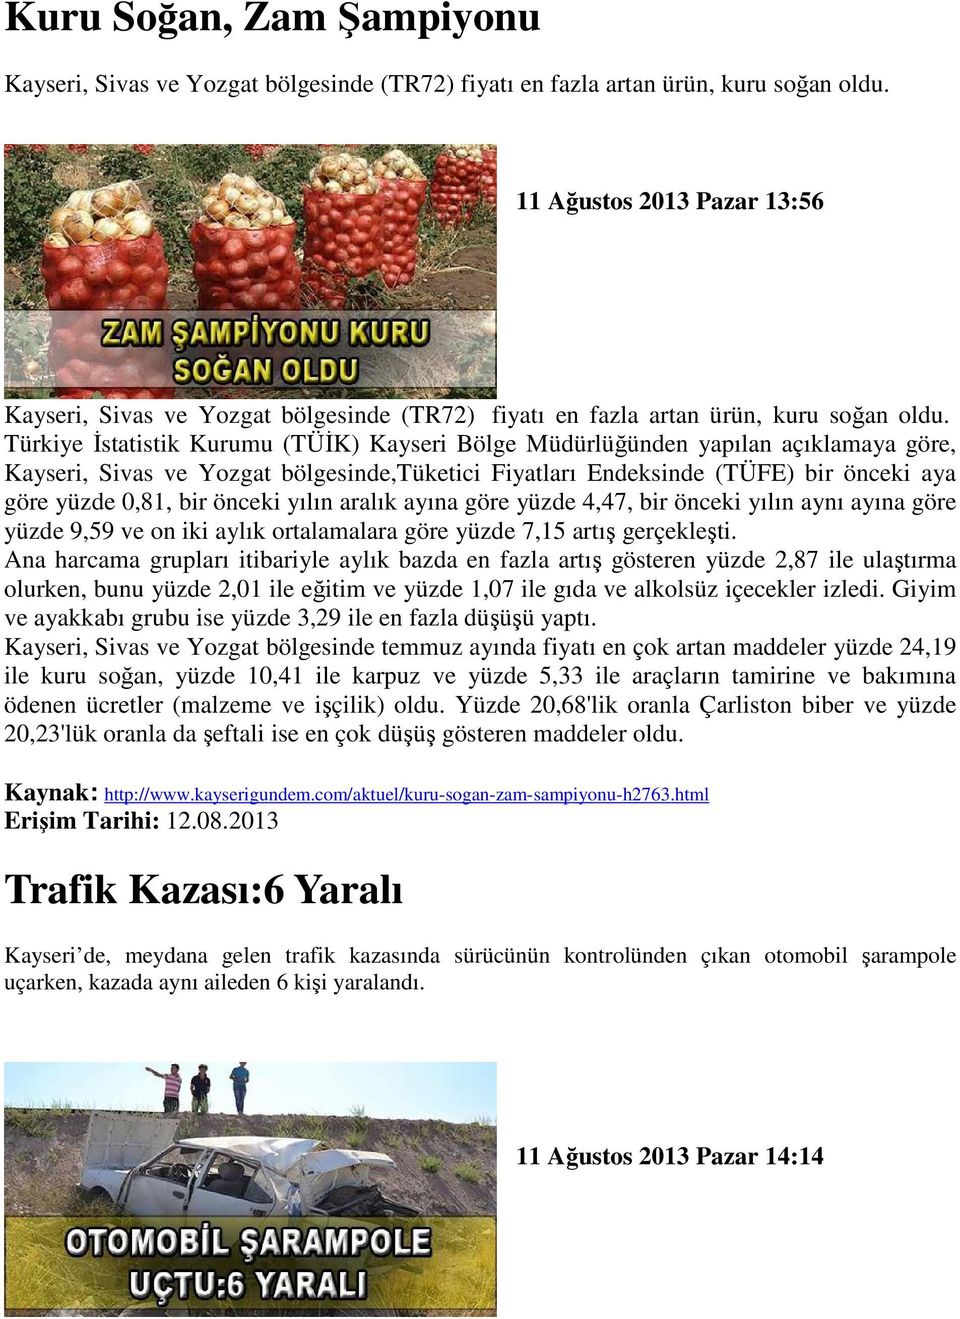 Türkiye Đstatistik Kurumu (TÜĐK) Kayseri Bölge Müdürlüğünden yapılan açıklamaya göre, Kayseri, Sivas ve Yozgat bölgesinde,tüketici Fiyatları Endeksinde (TÜFE) bir önceki aya göre yüzde 0,81, bir